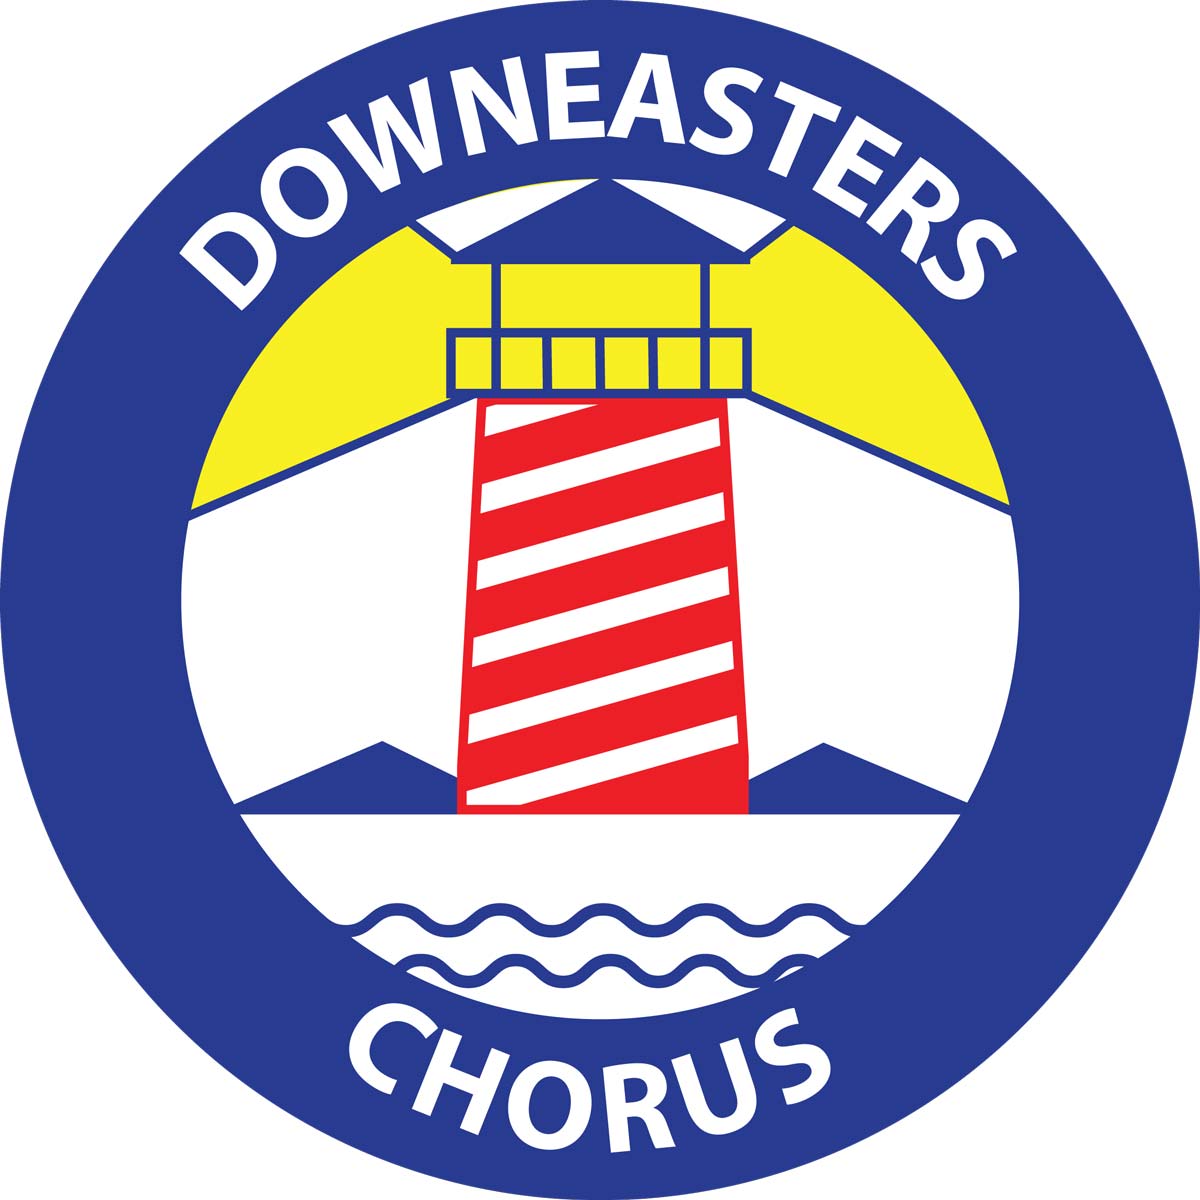 Image of Downeaster’s Chorus logo